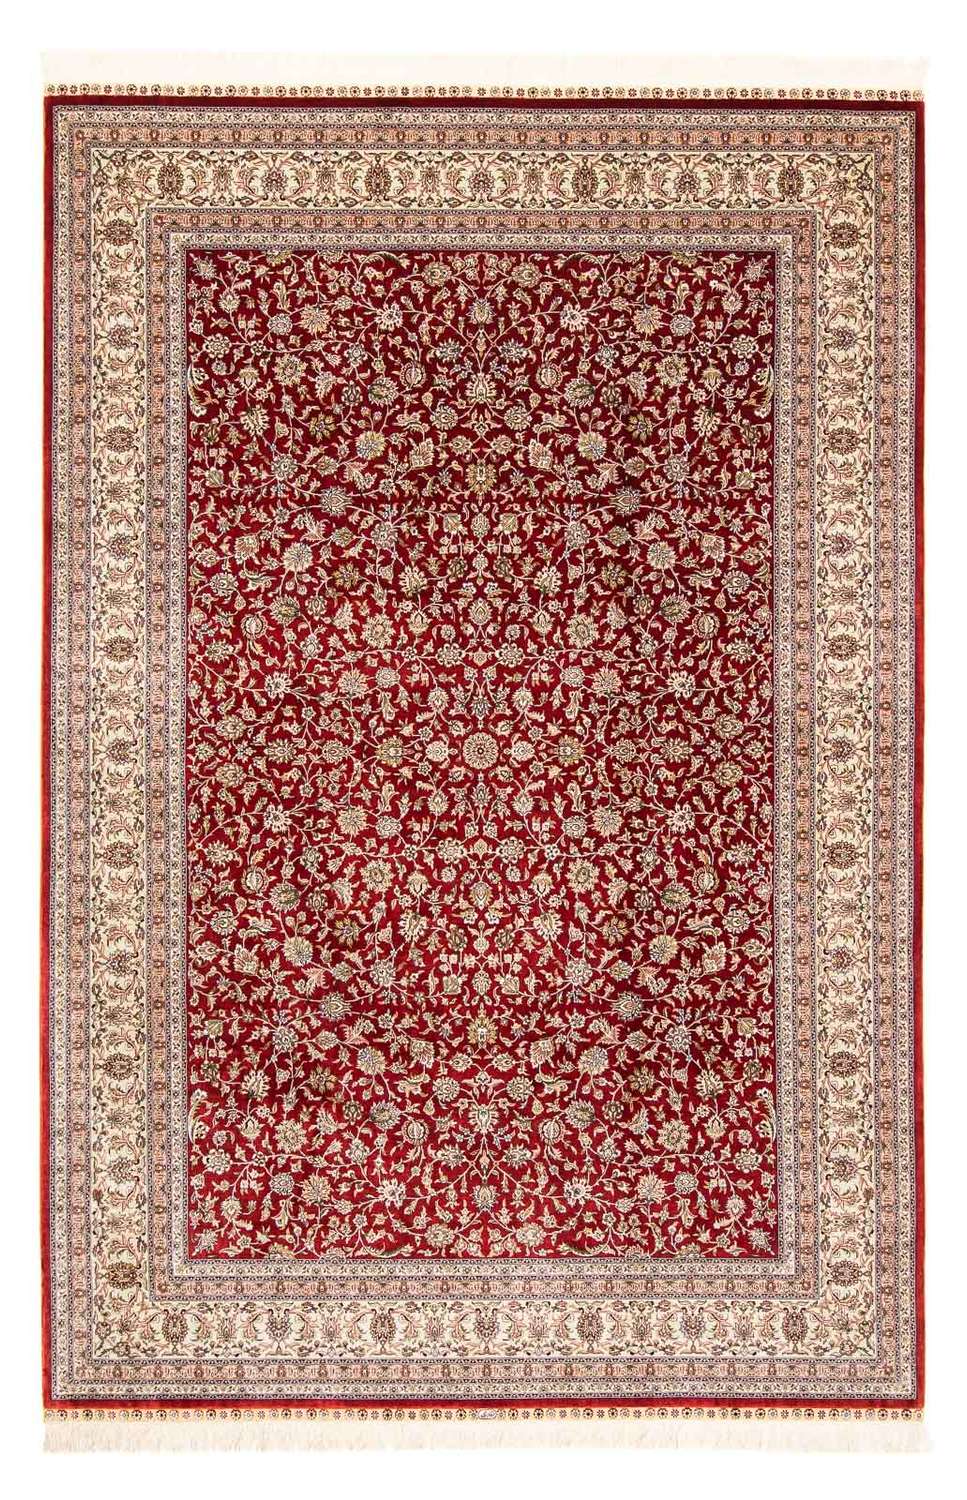 Orientalsk tæppe - Hereke - 276 x 185 cm - mørkerød